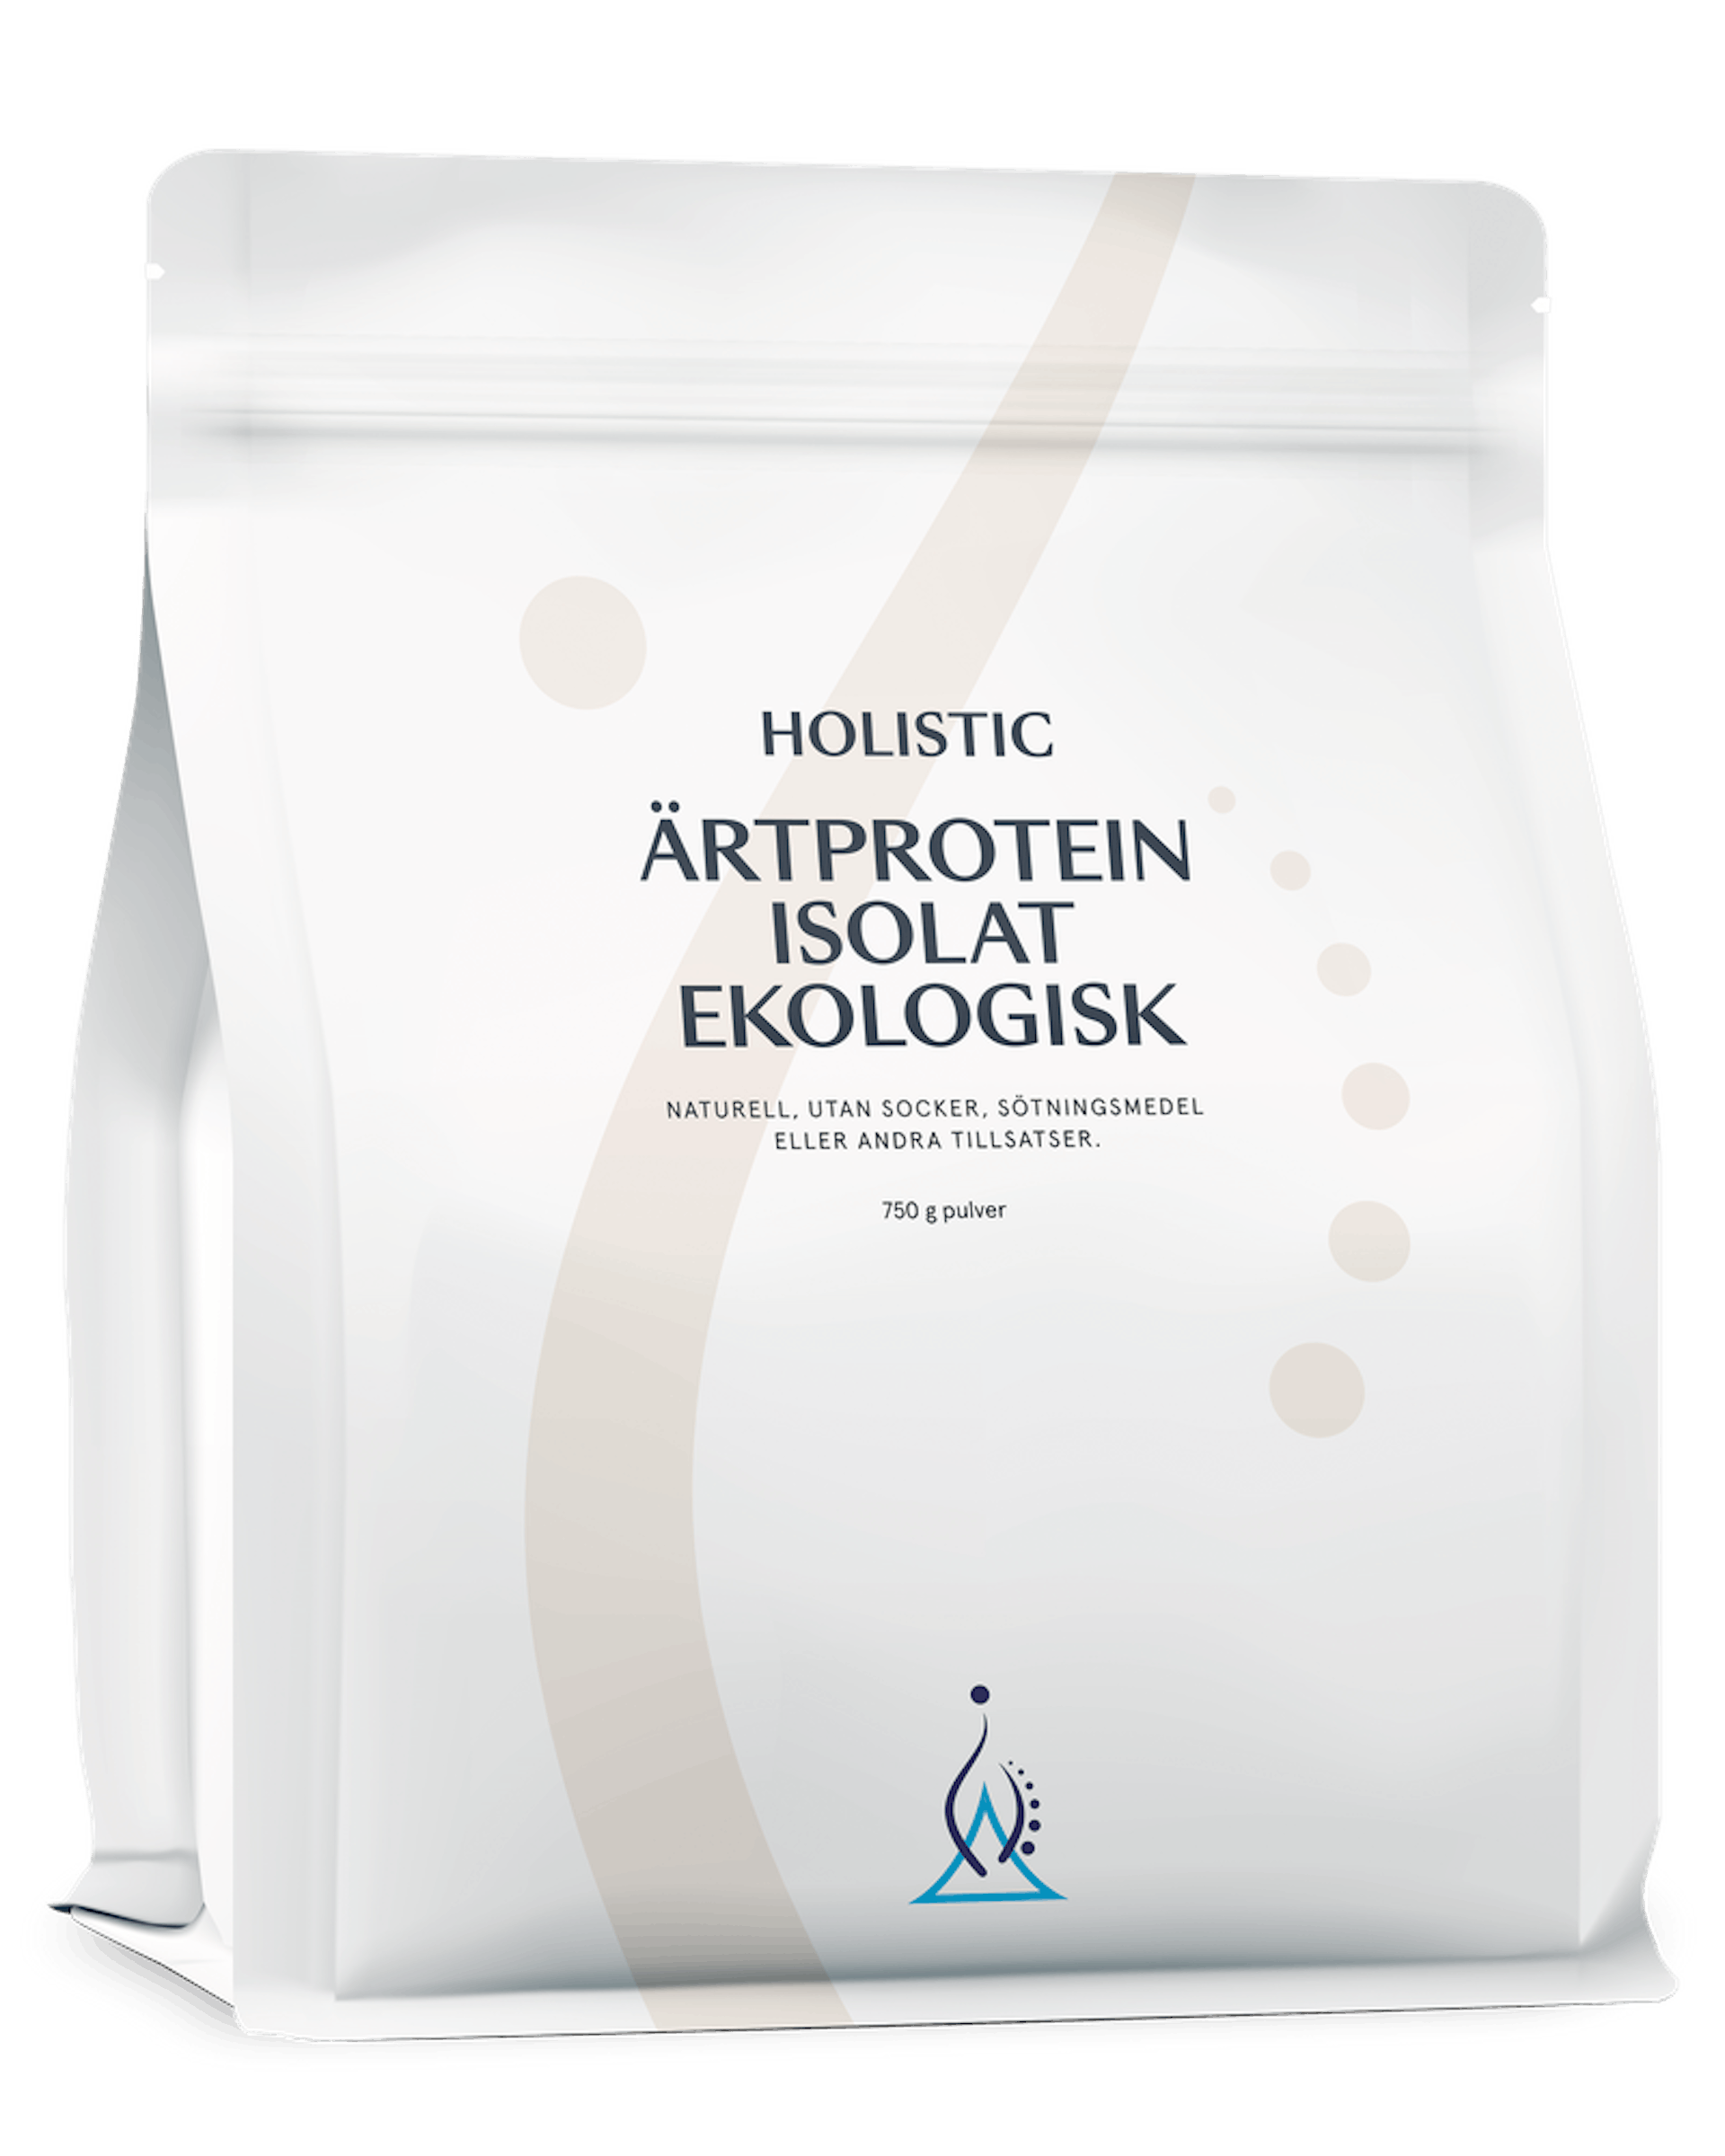 Ärtproteinisolat ekologisk, 750 g